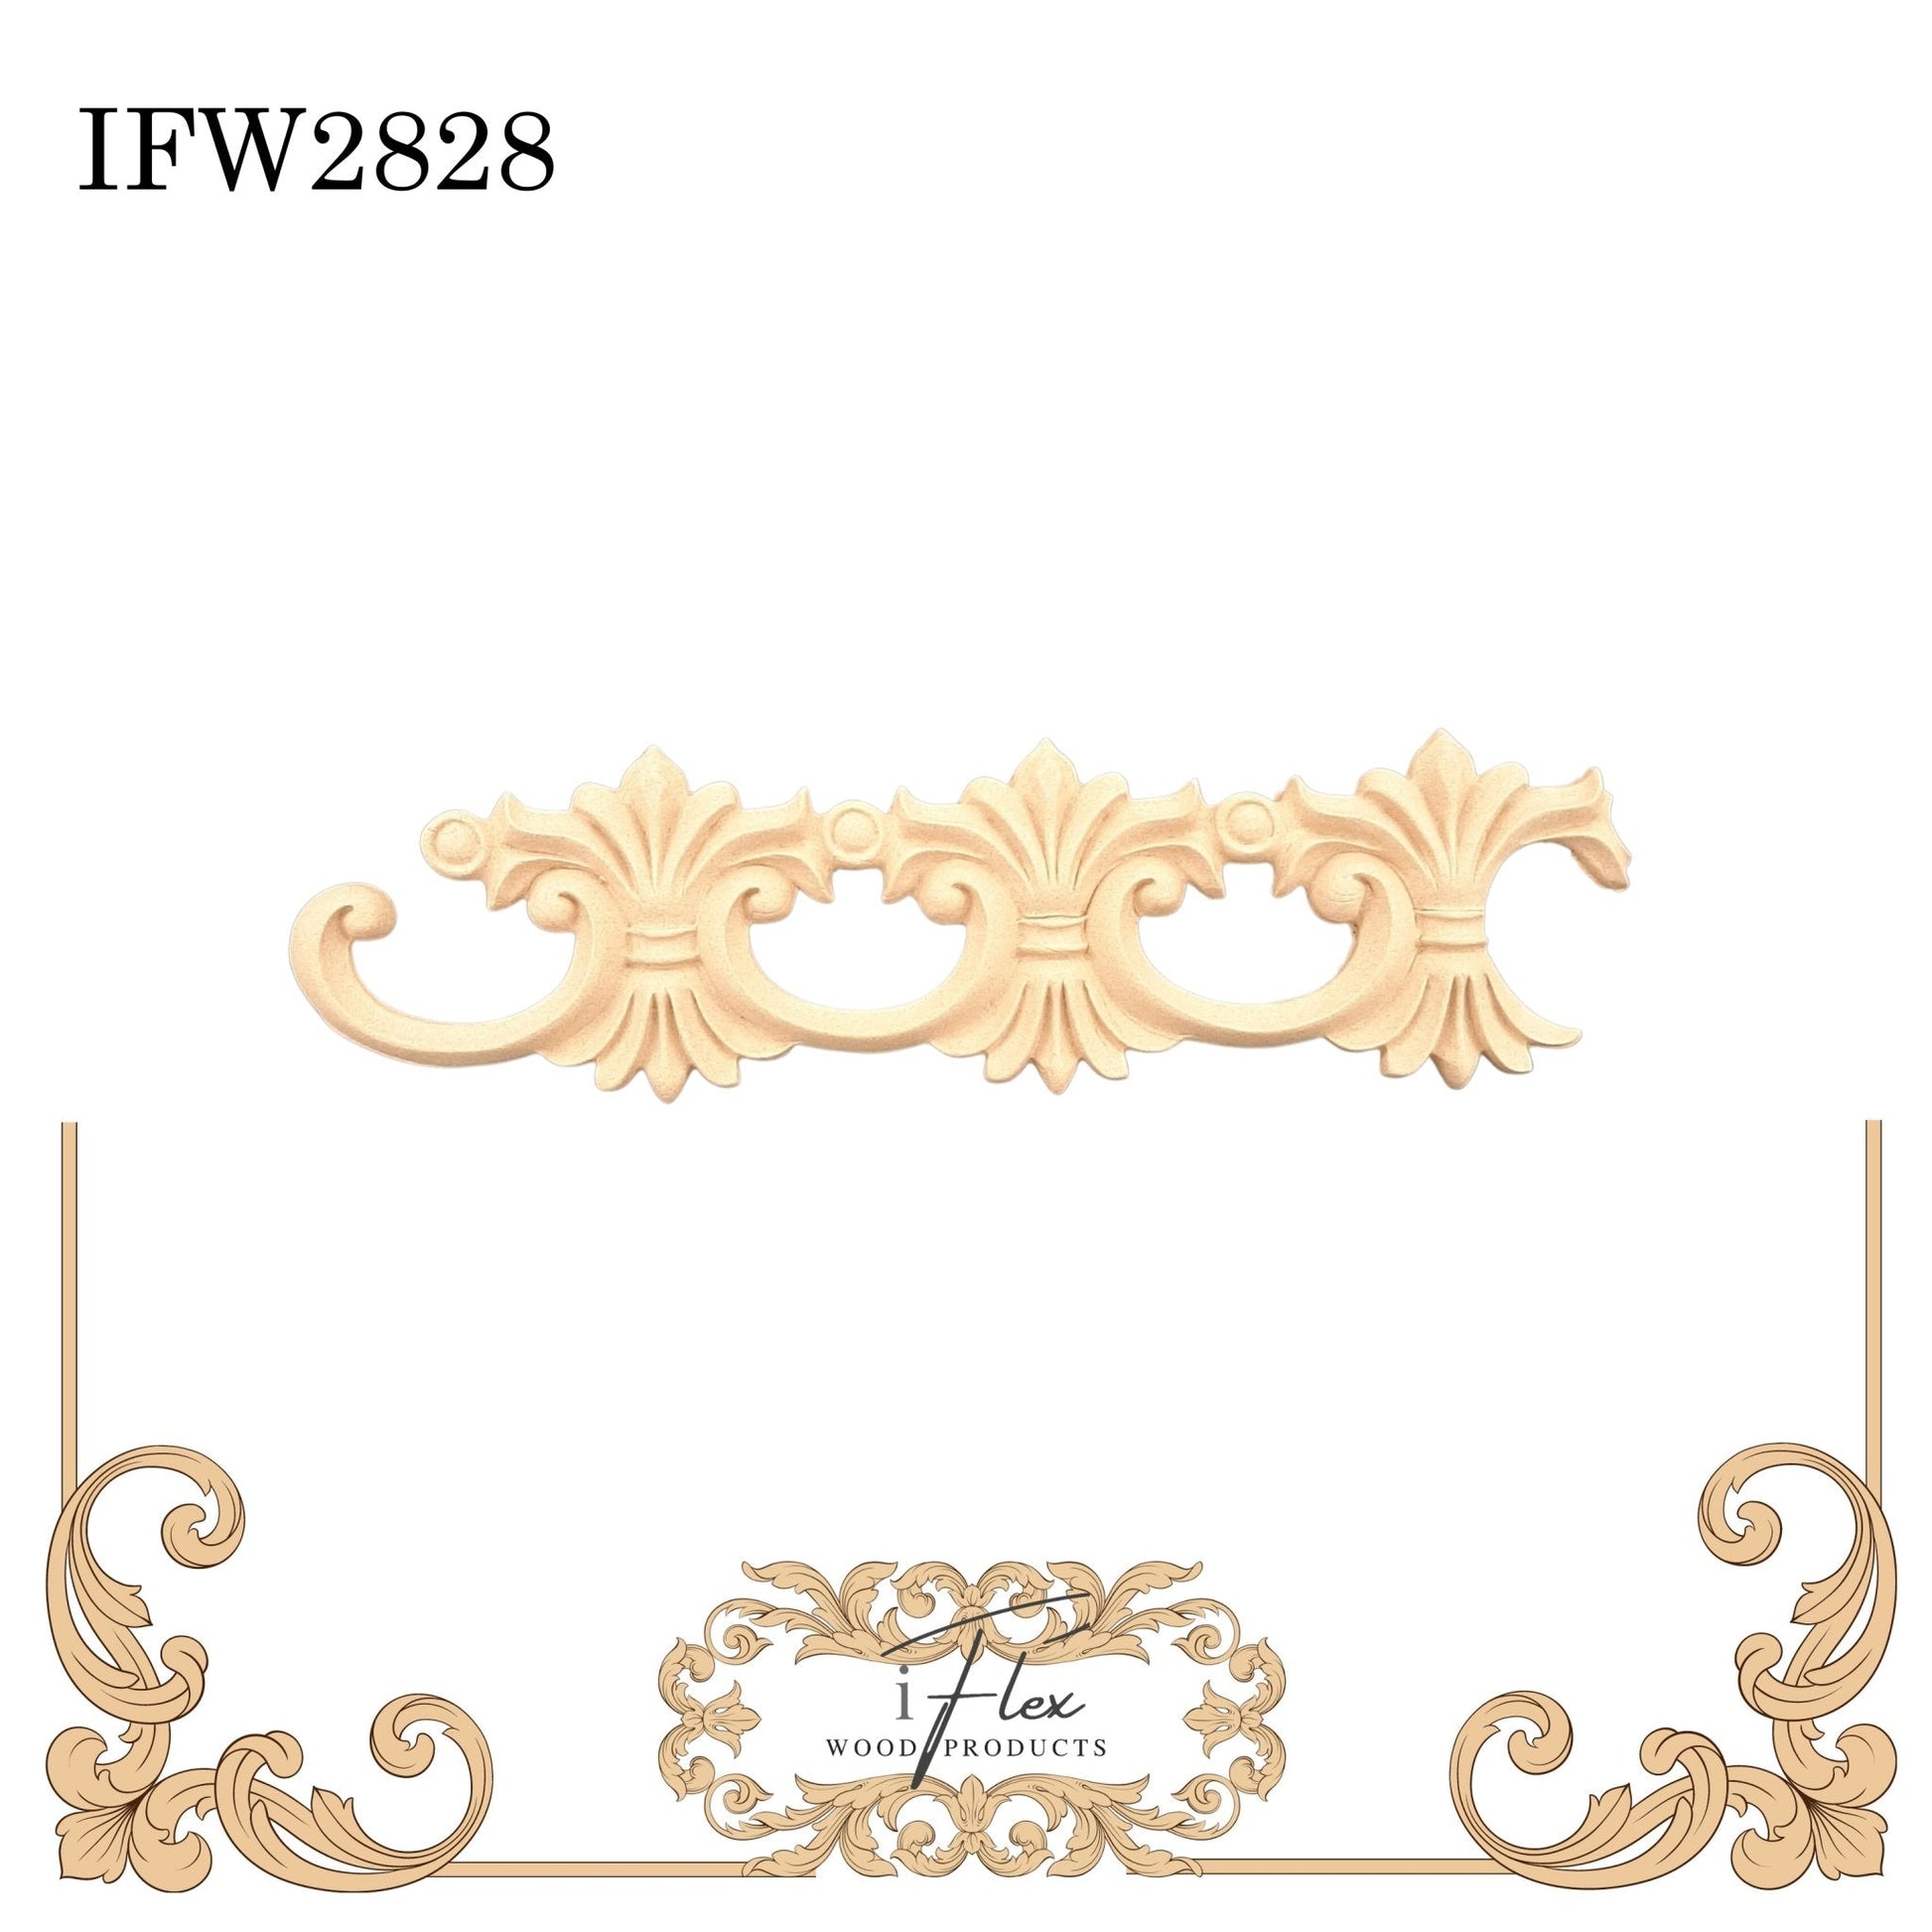 IFW 2828